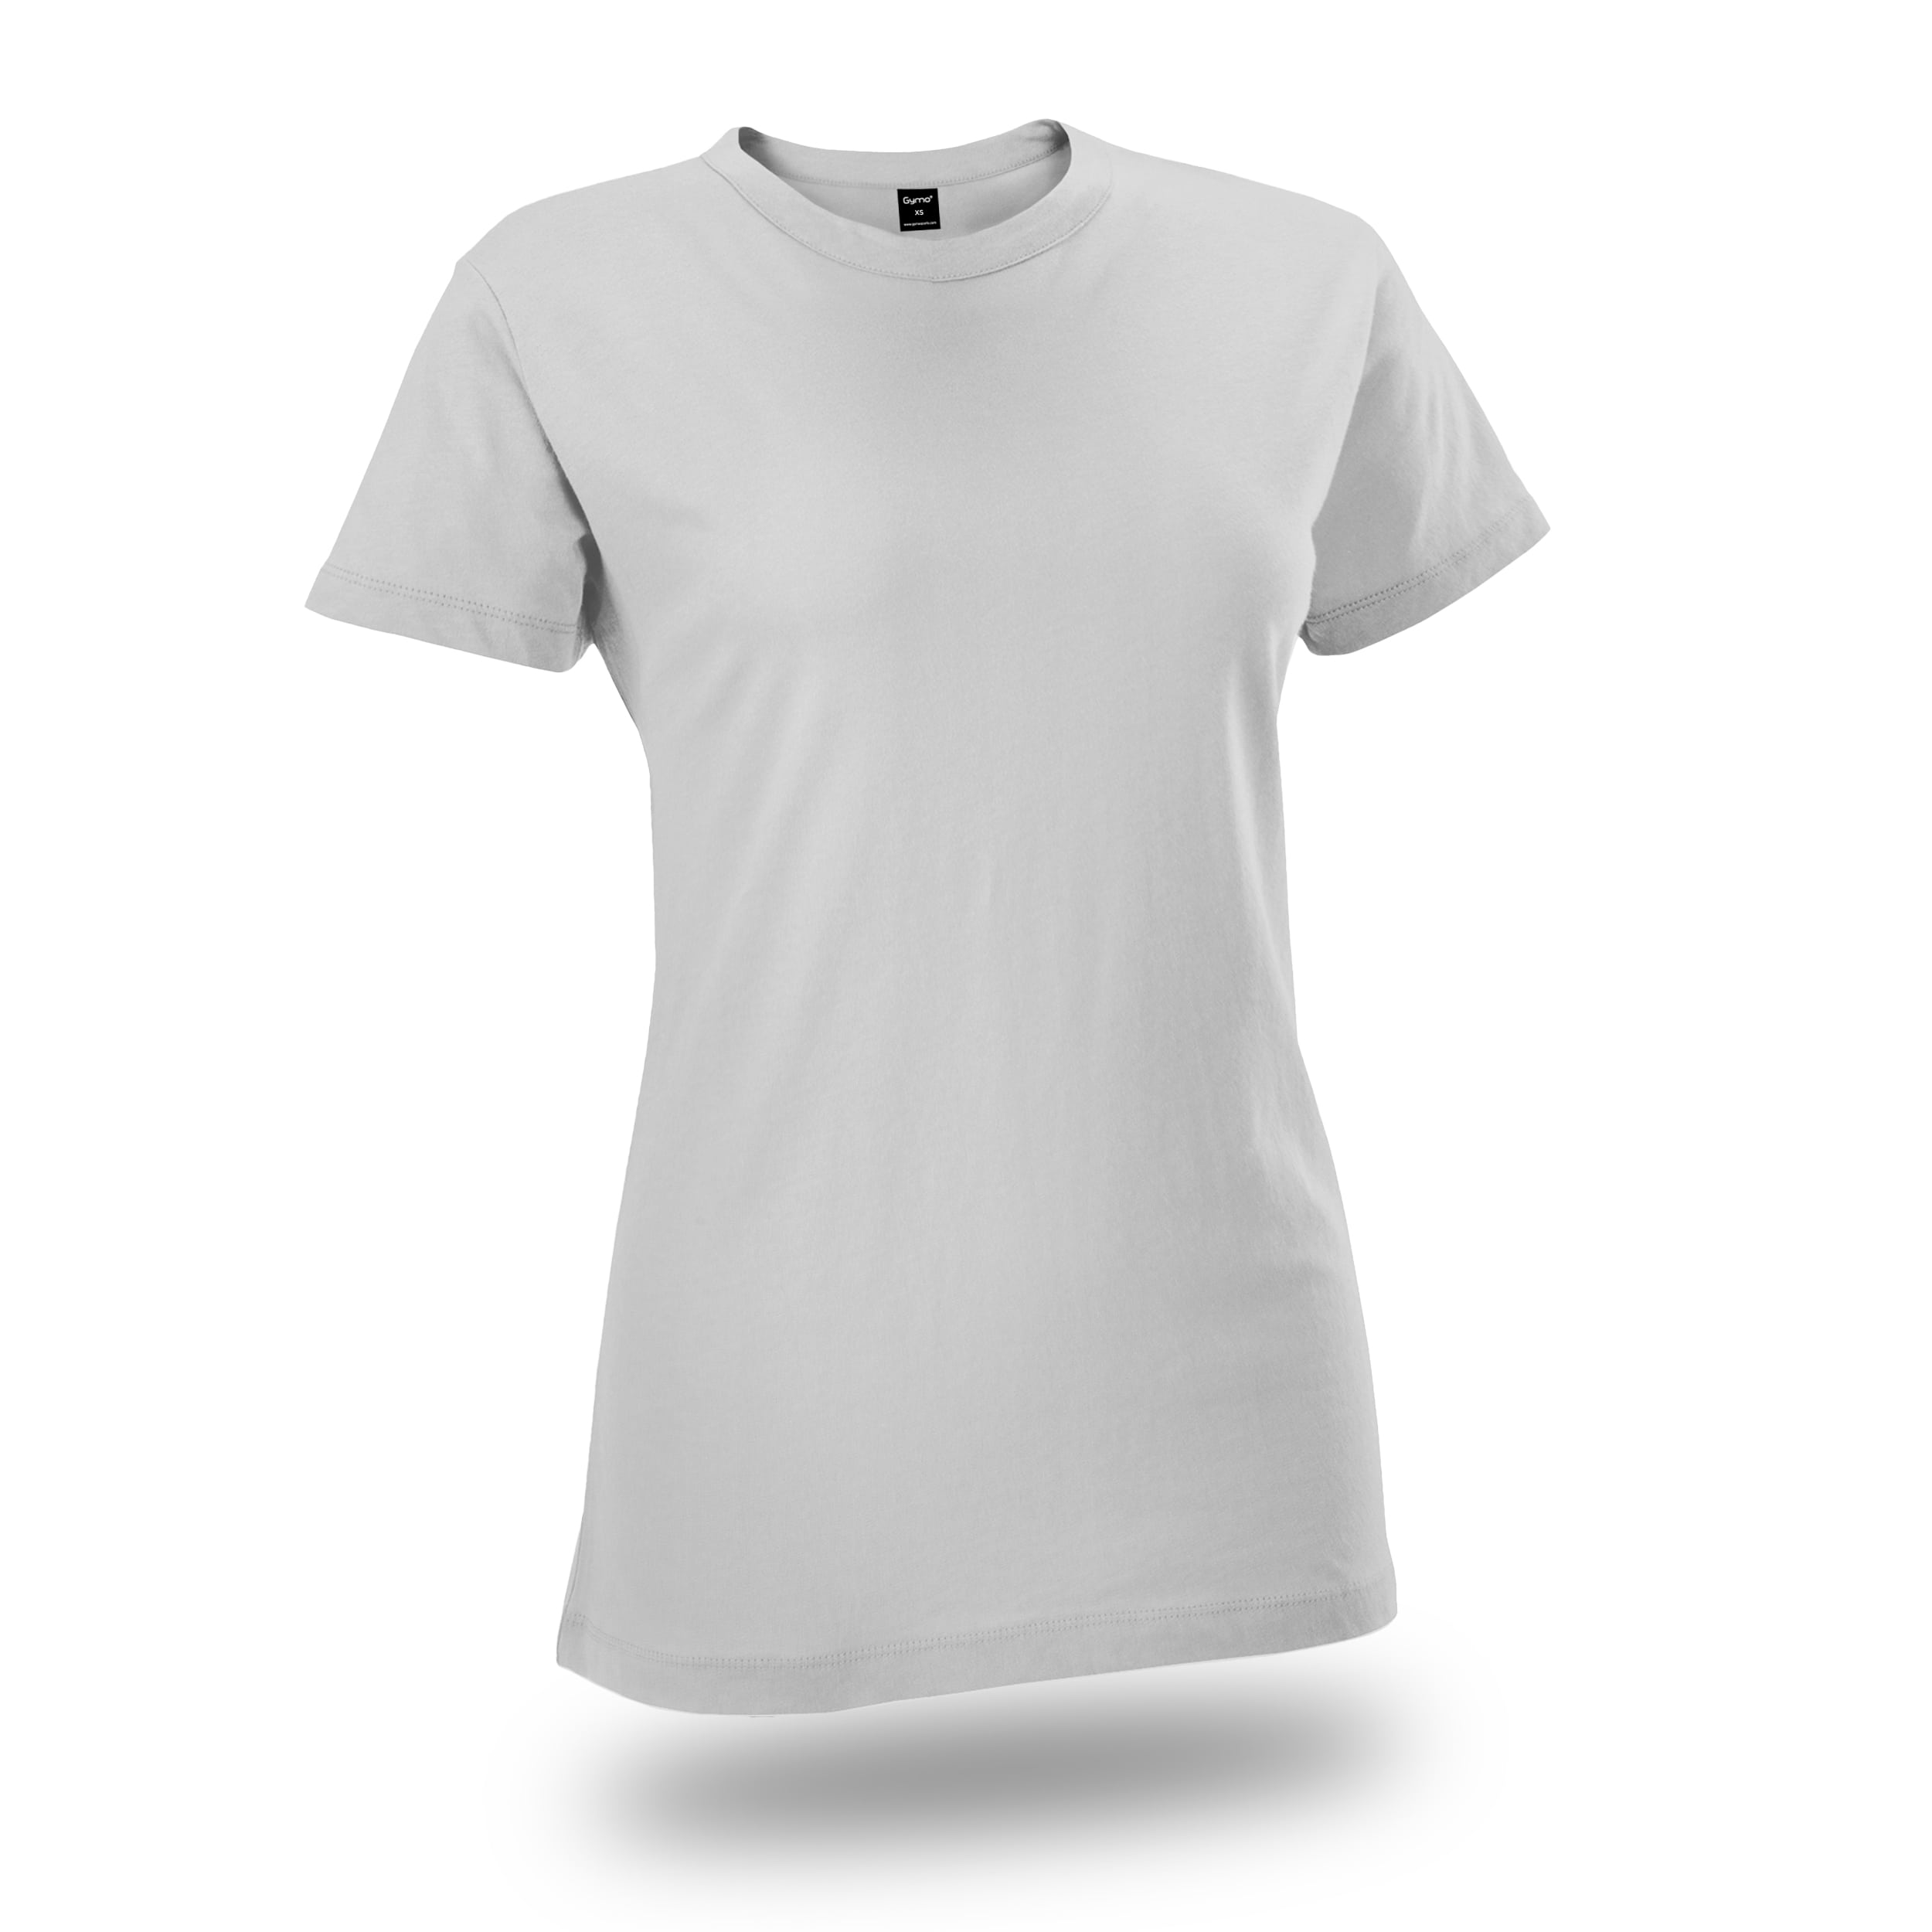 GYMO SPORTS - Gymo Sports Bayan Basic T-Shirt Beyaz